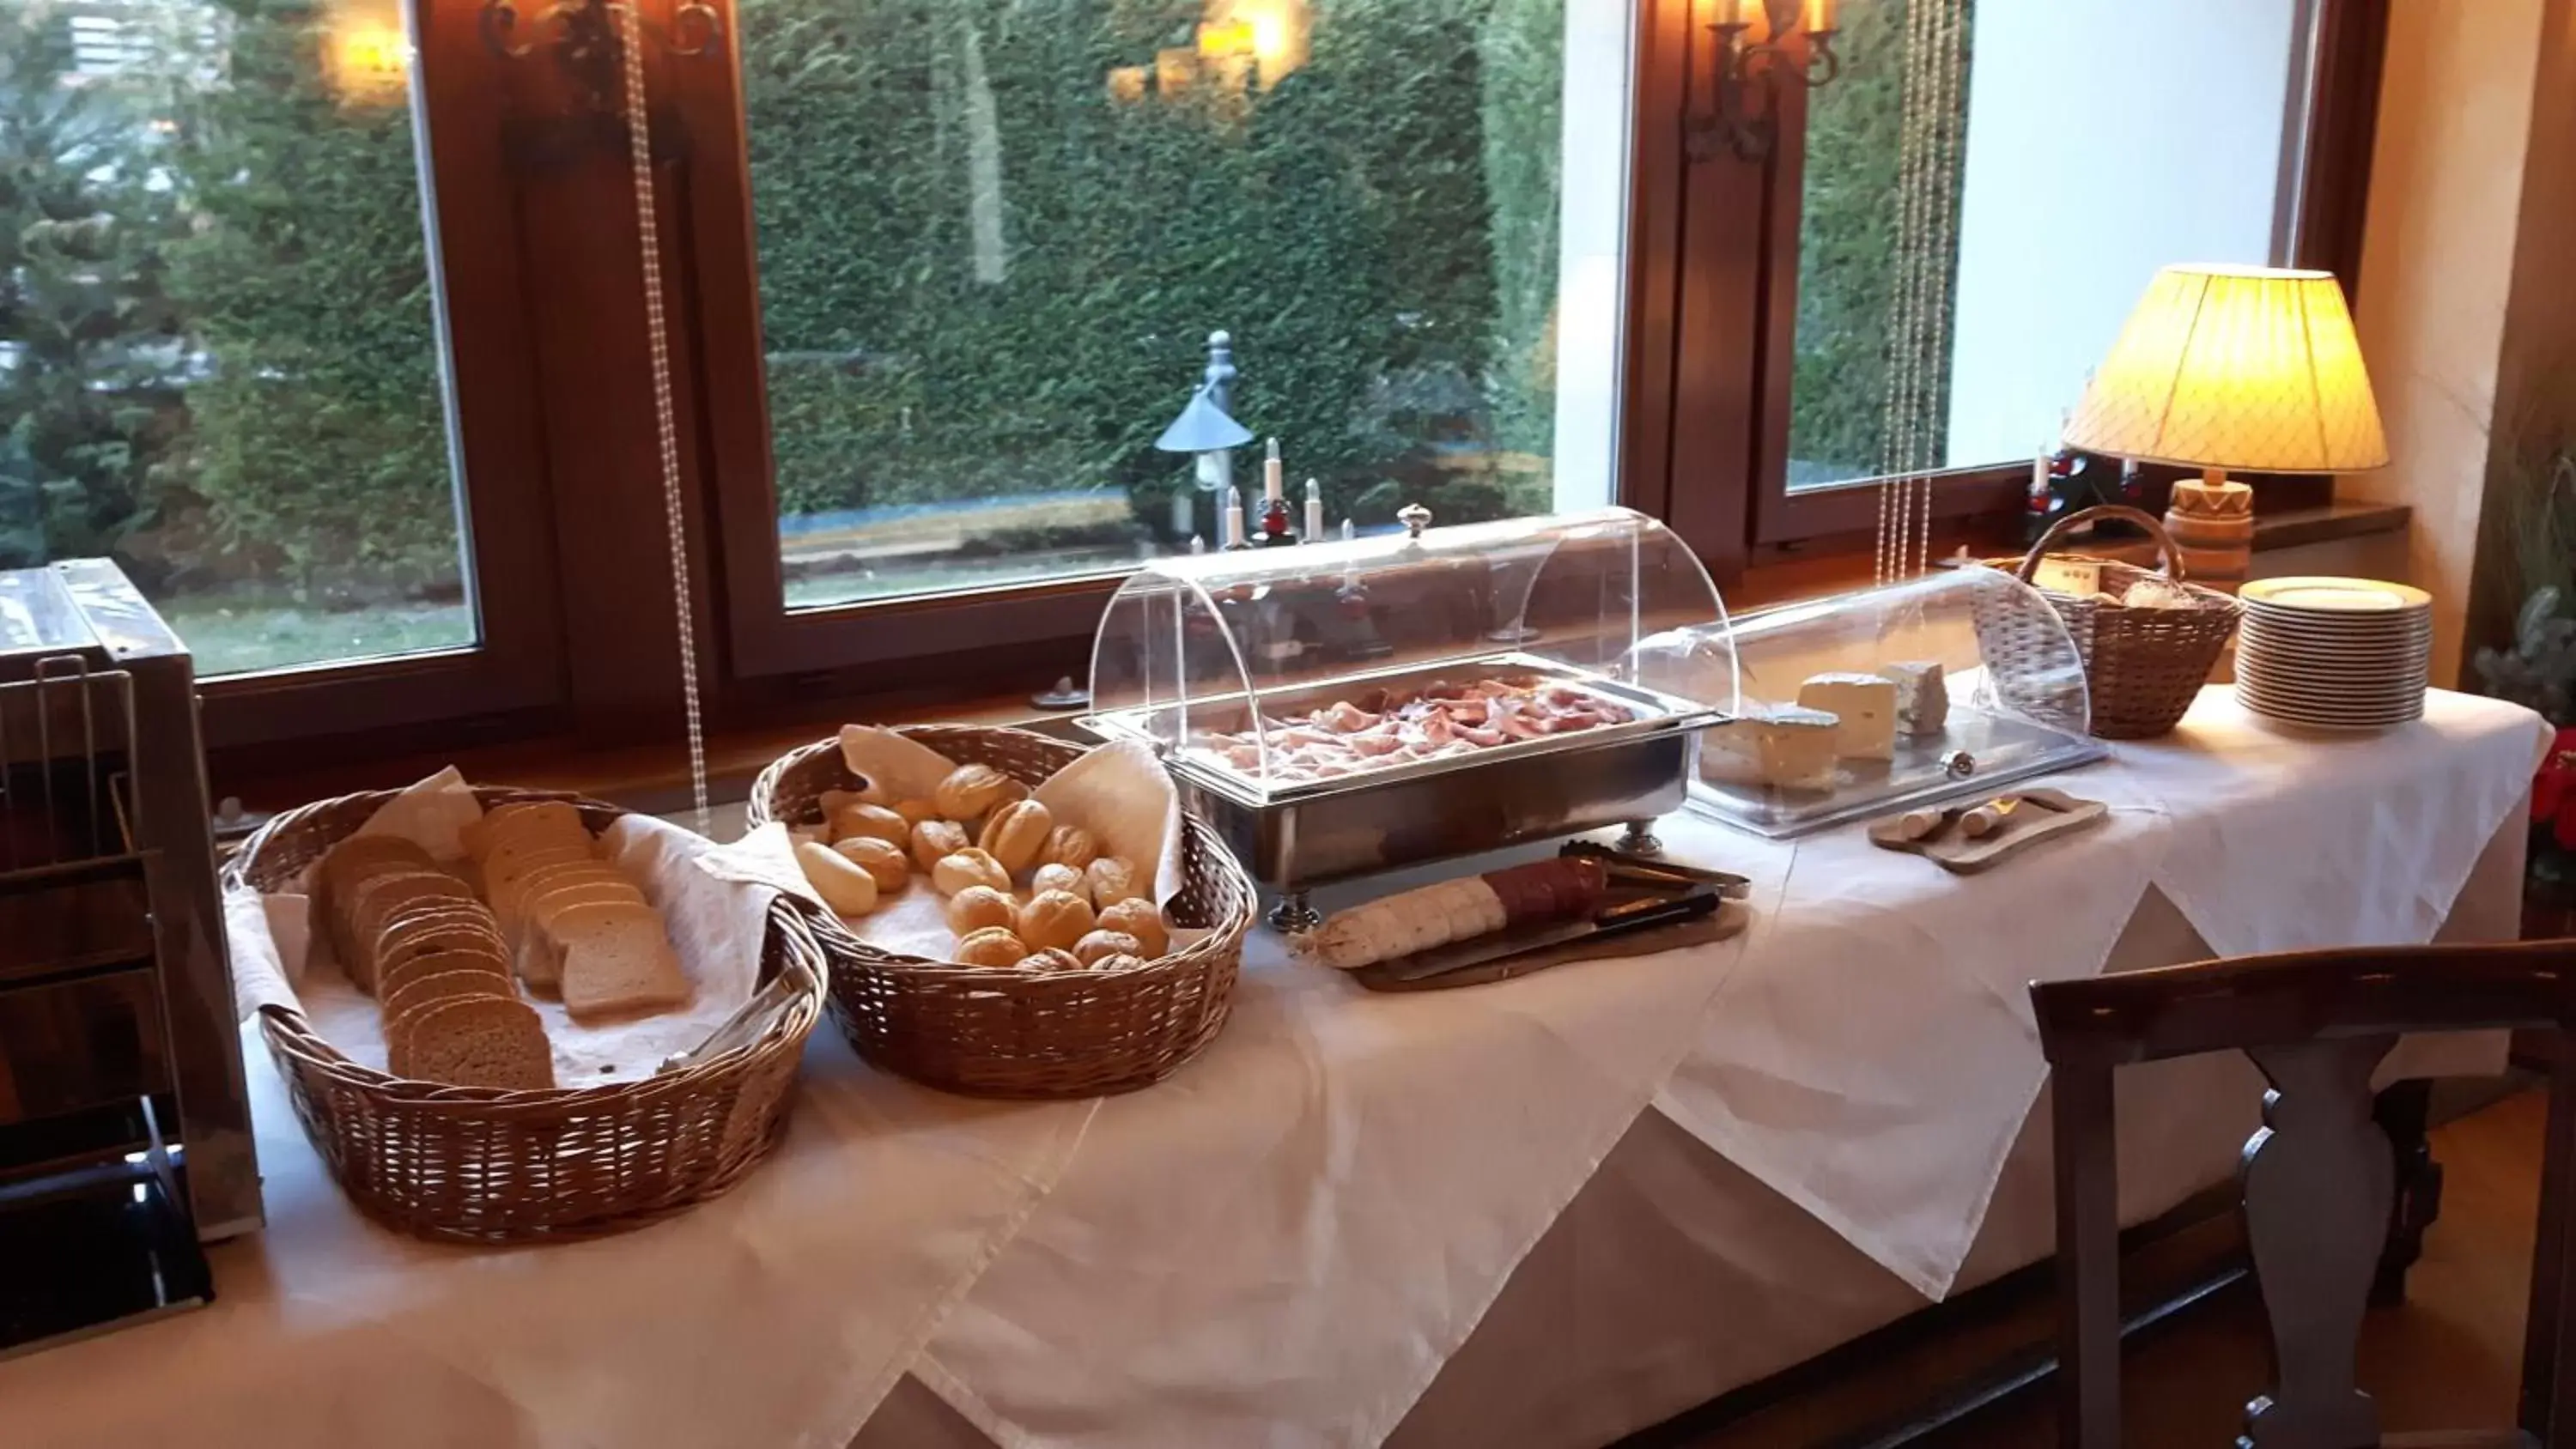 Buffet breakfast in Villa Novecento Romantic Hotel - Estella Hotel Collection